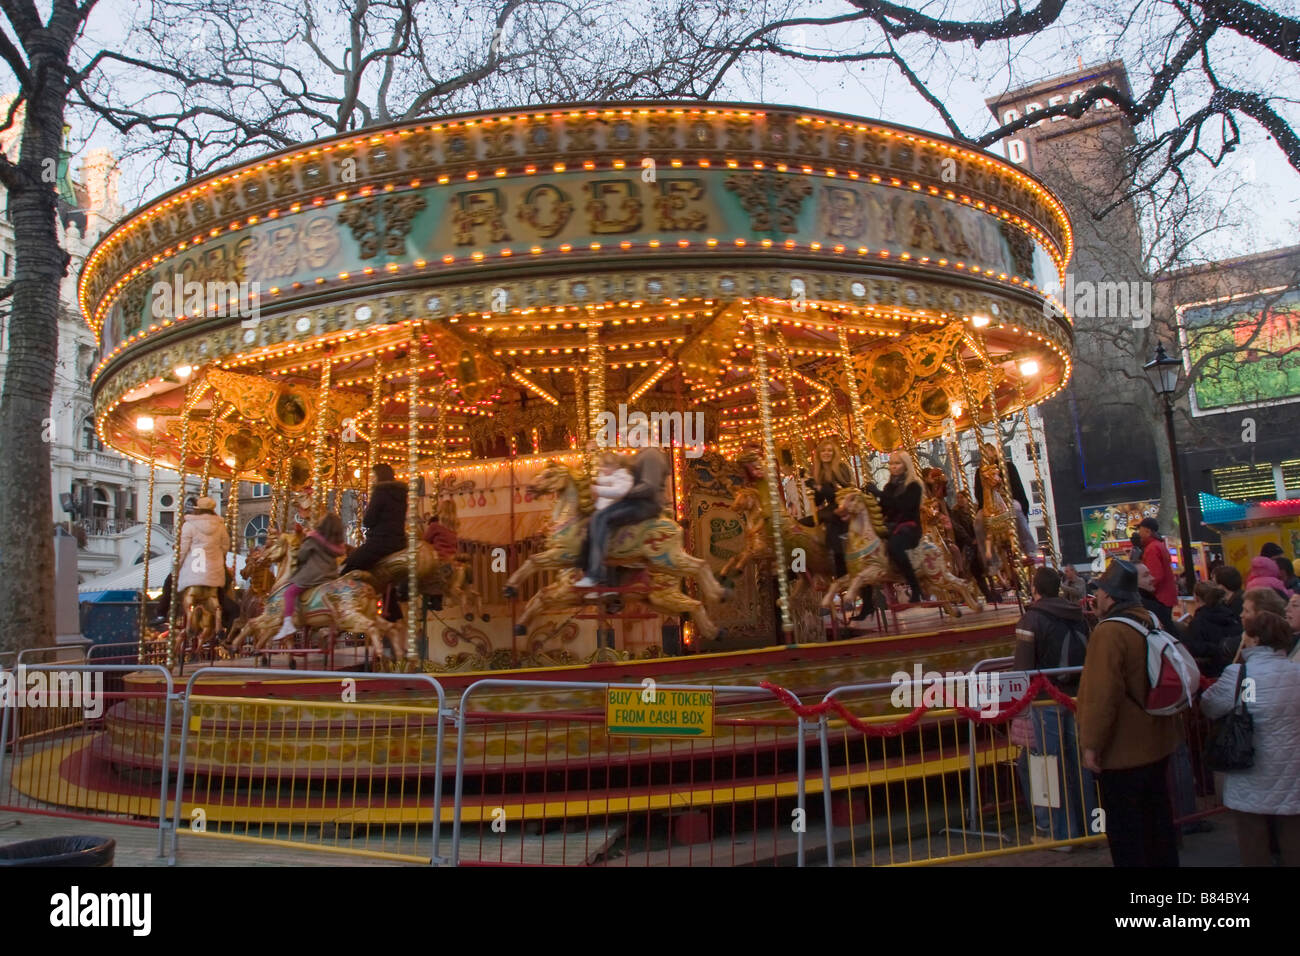 Karussell am Weihnachtsmarkt am Leicester Square, London England Großbritannien GB Vereinigtes Königreich Stockfoto